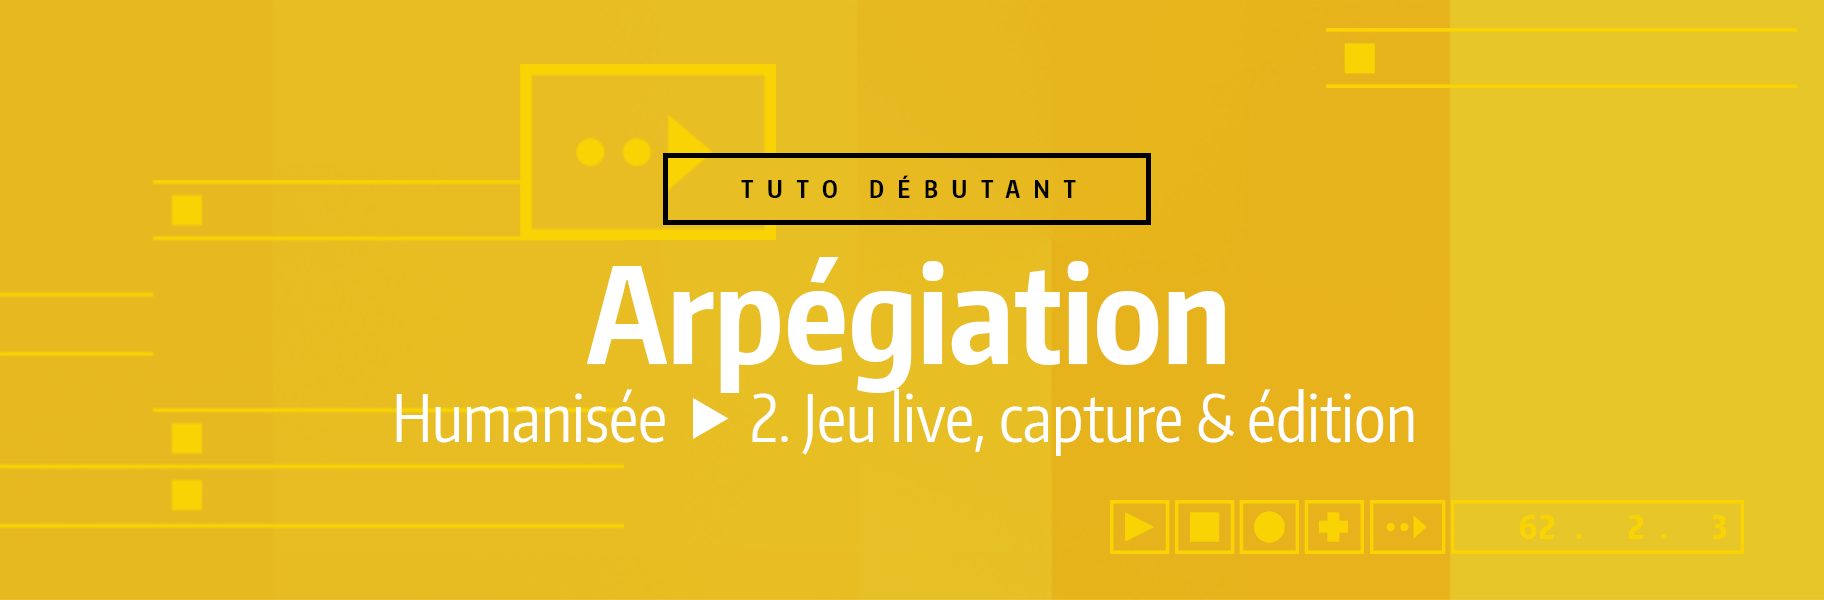 Tutoriel Ableton Live - Arpégiation humanisée - 2. Jeu live, capture & édition